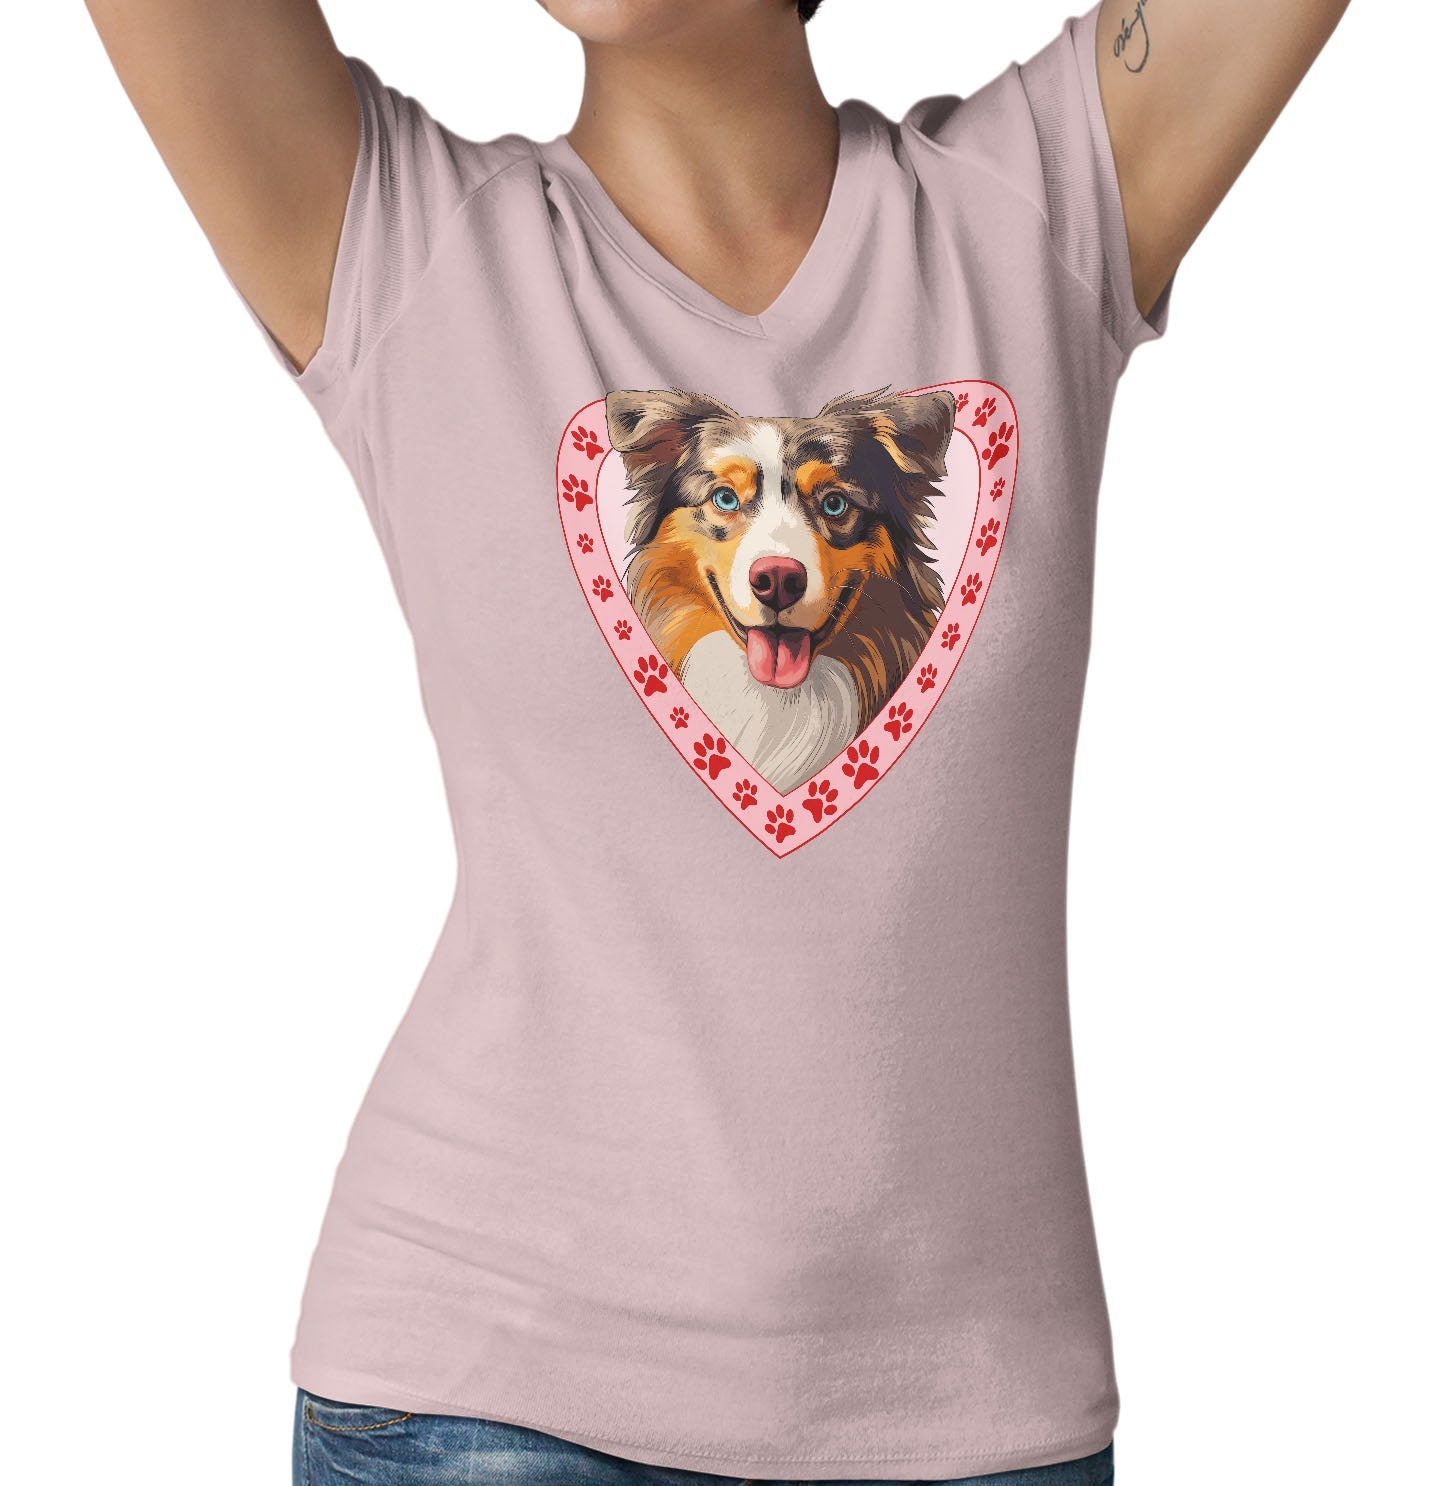 Australian Shepherd Illustration In Heart - Women's V-Neck T-Shirt